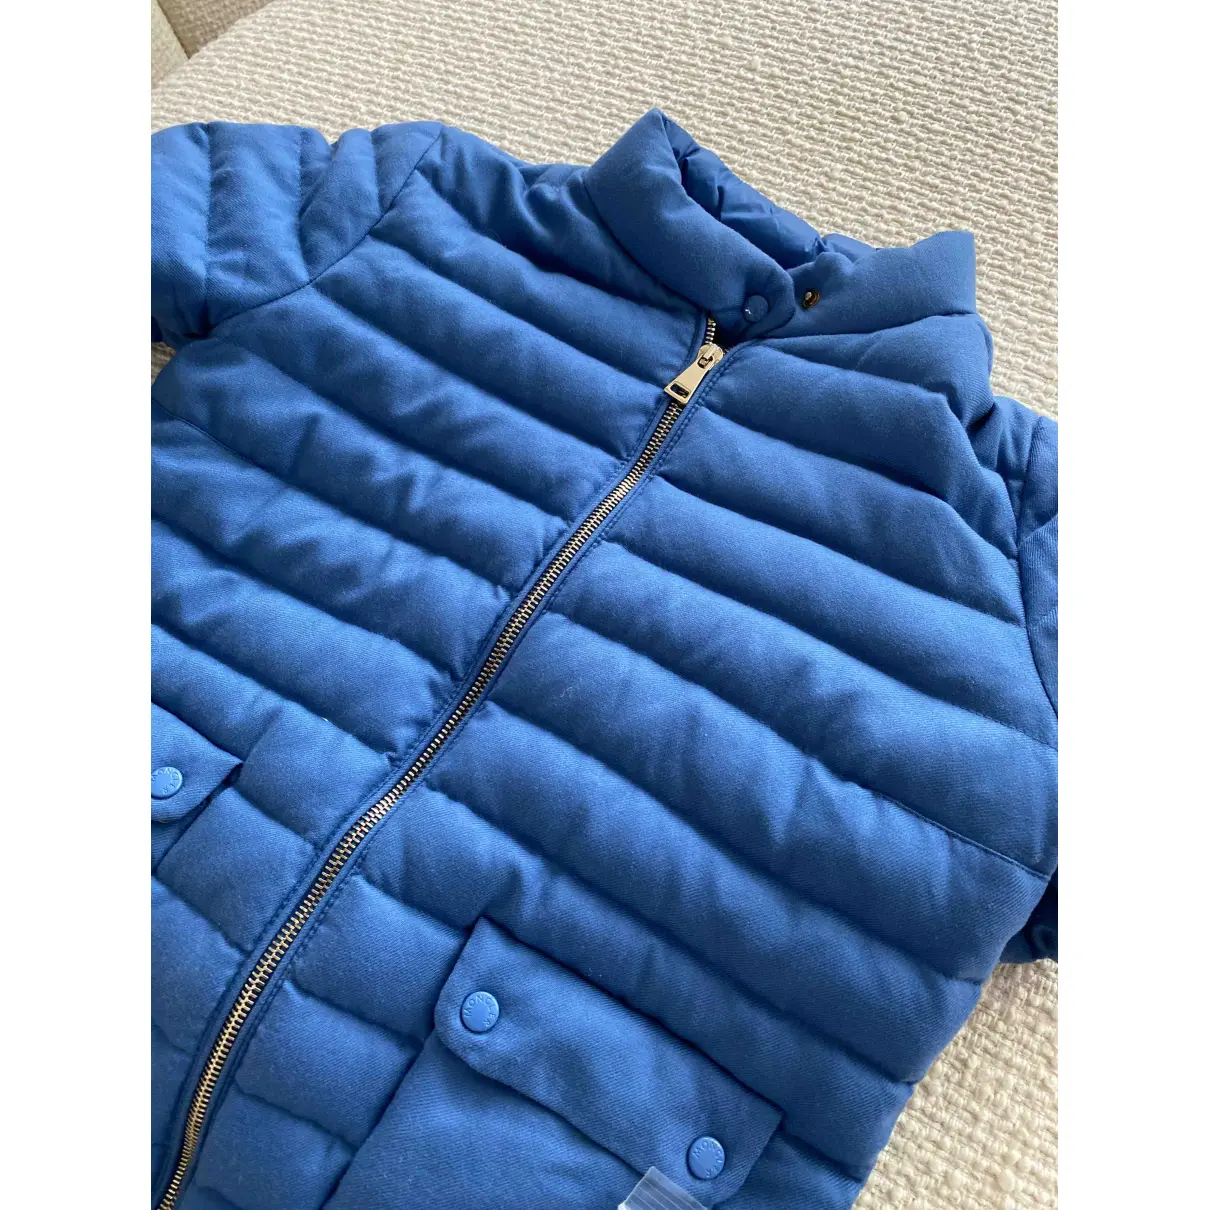 Blue Cotton Coat Classic Moncler